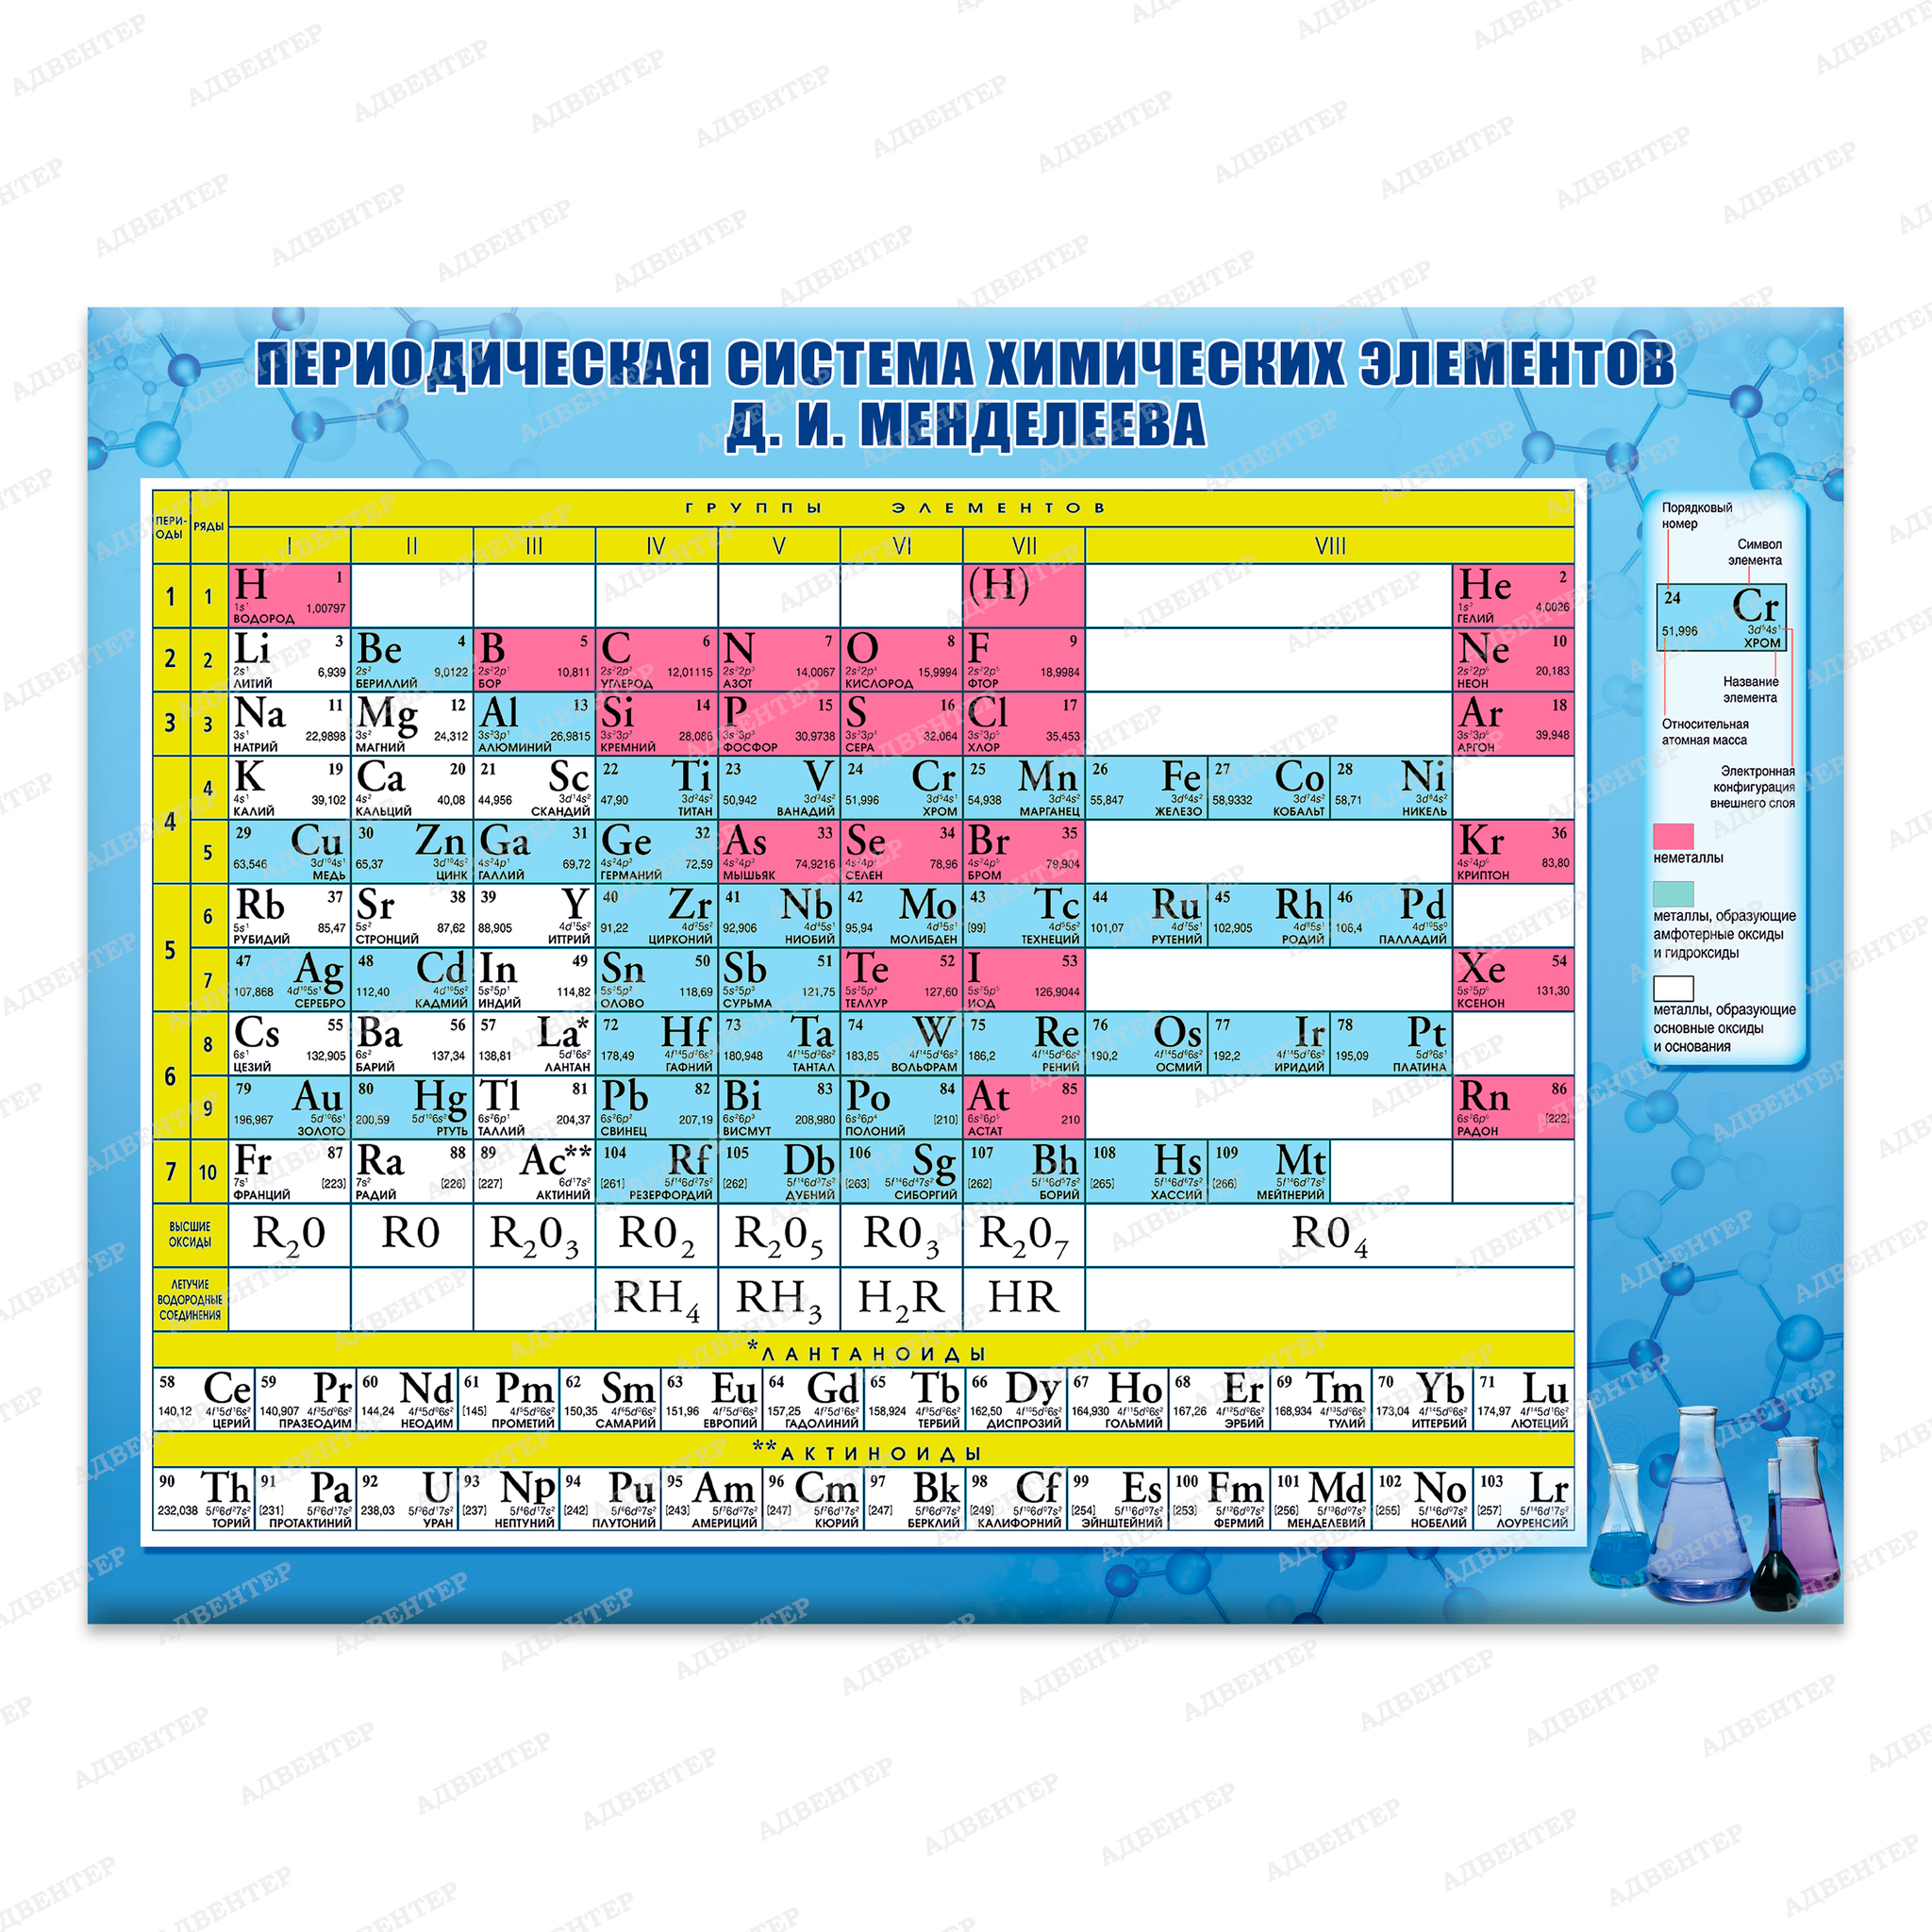 Где главная группа. Таблица по химии периодическая система химических элементов. Периодическая система химических элементов Менделеева химия 8 класс. Периодическая таблица химических элементов Менделеева 9 класс. Таблица Менделеева по химии 8 класс химические элементы.